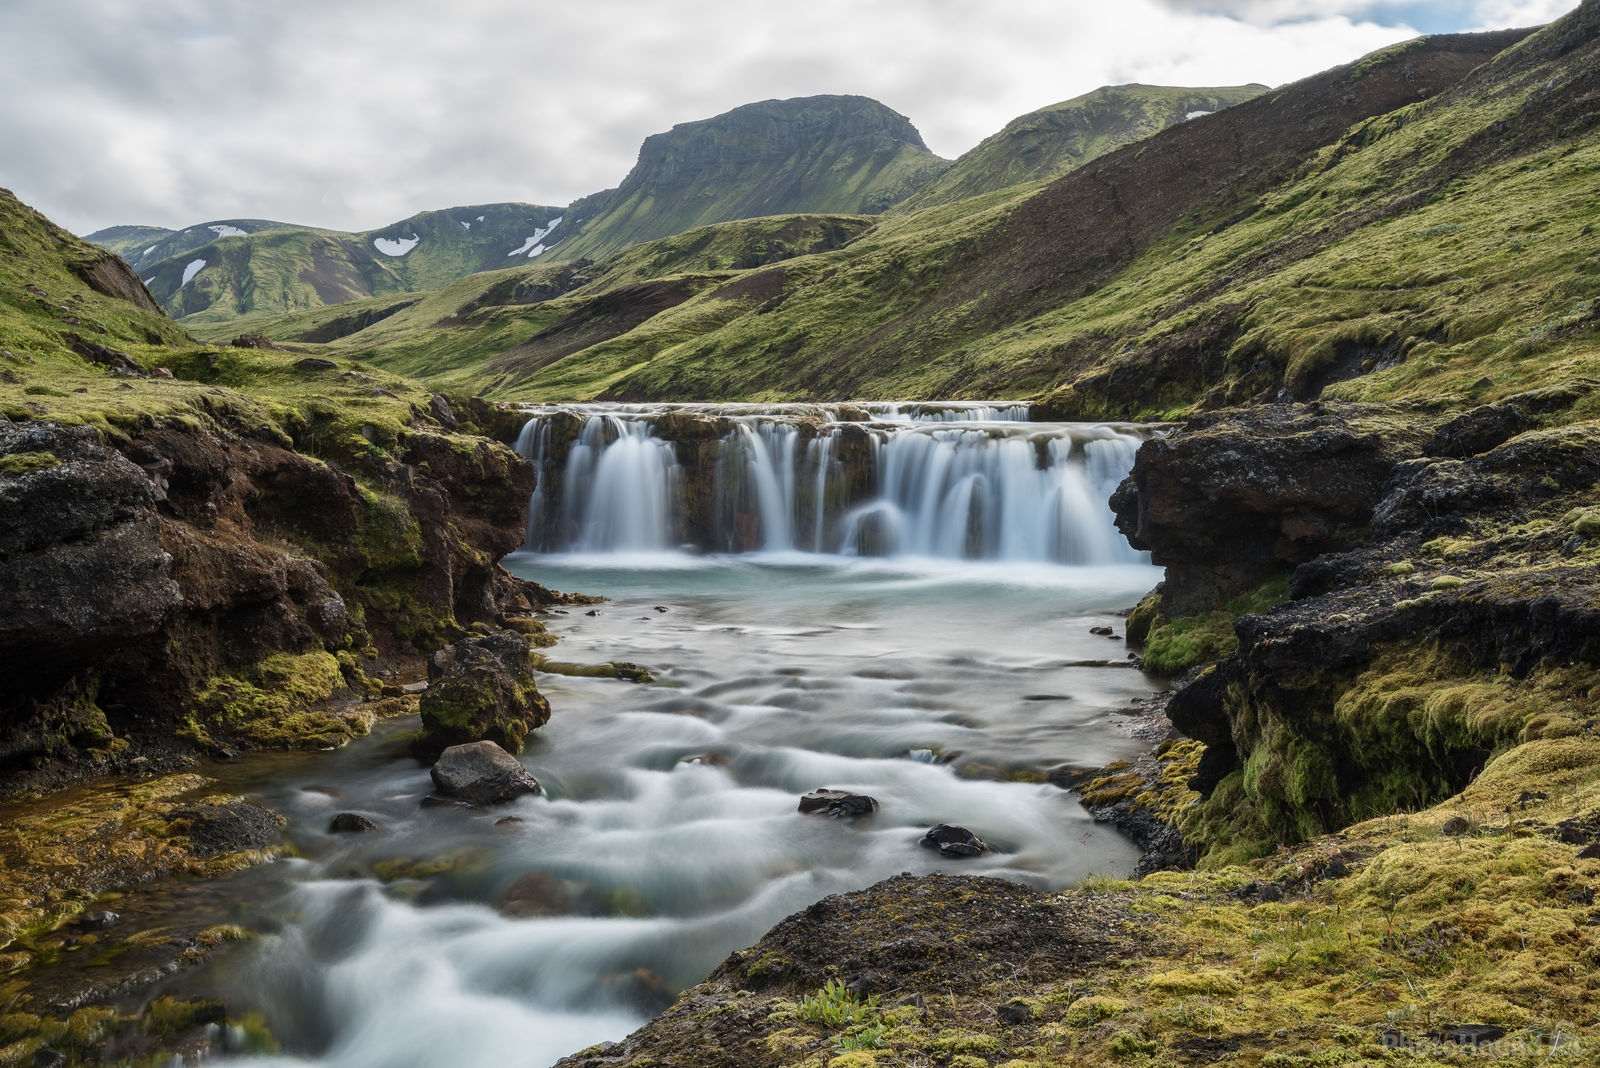 Image of Alftavatn waterfall by Richard Lizzimore